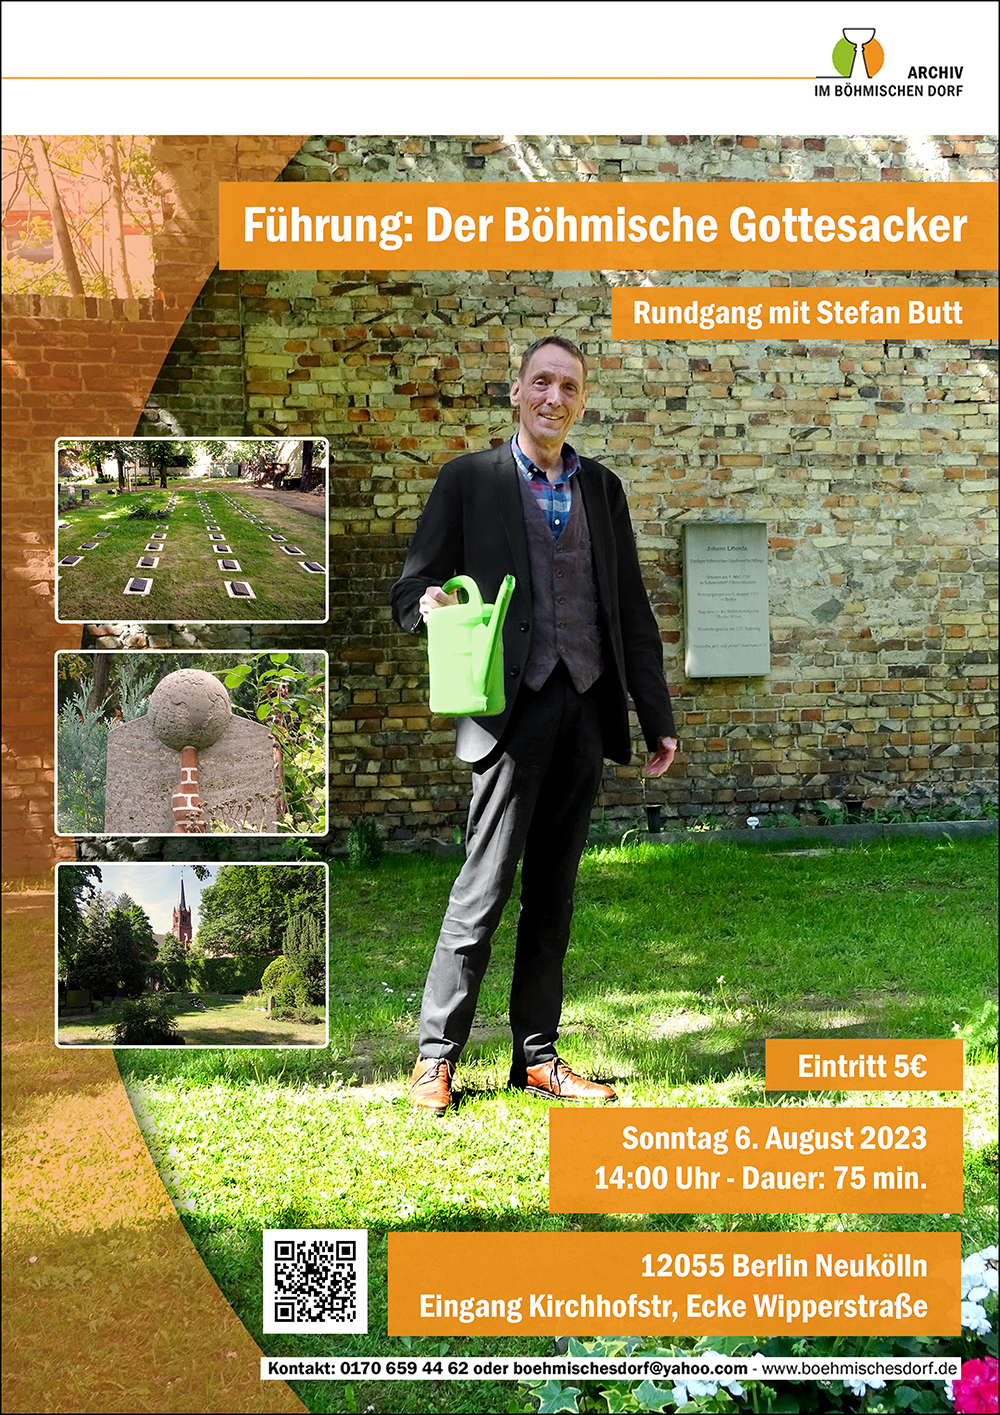 Führung: Böhmischer Gottesacker 6.August